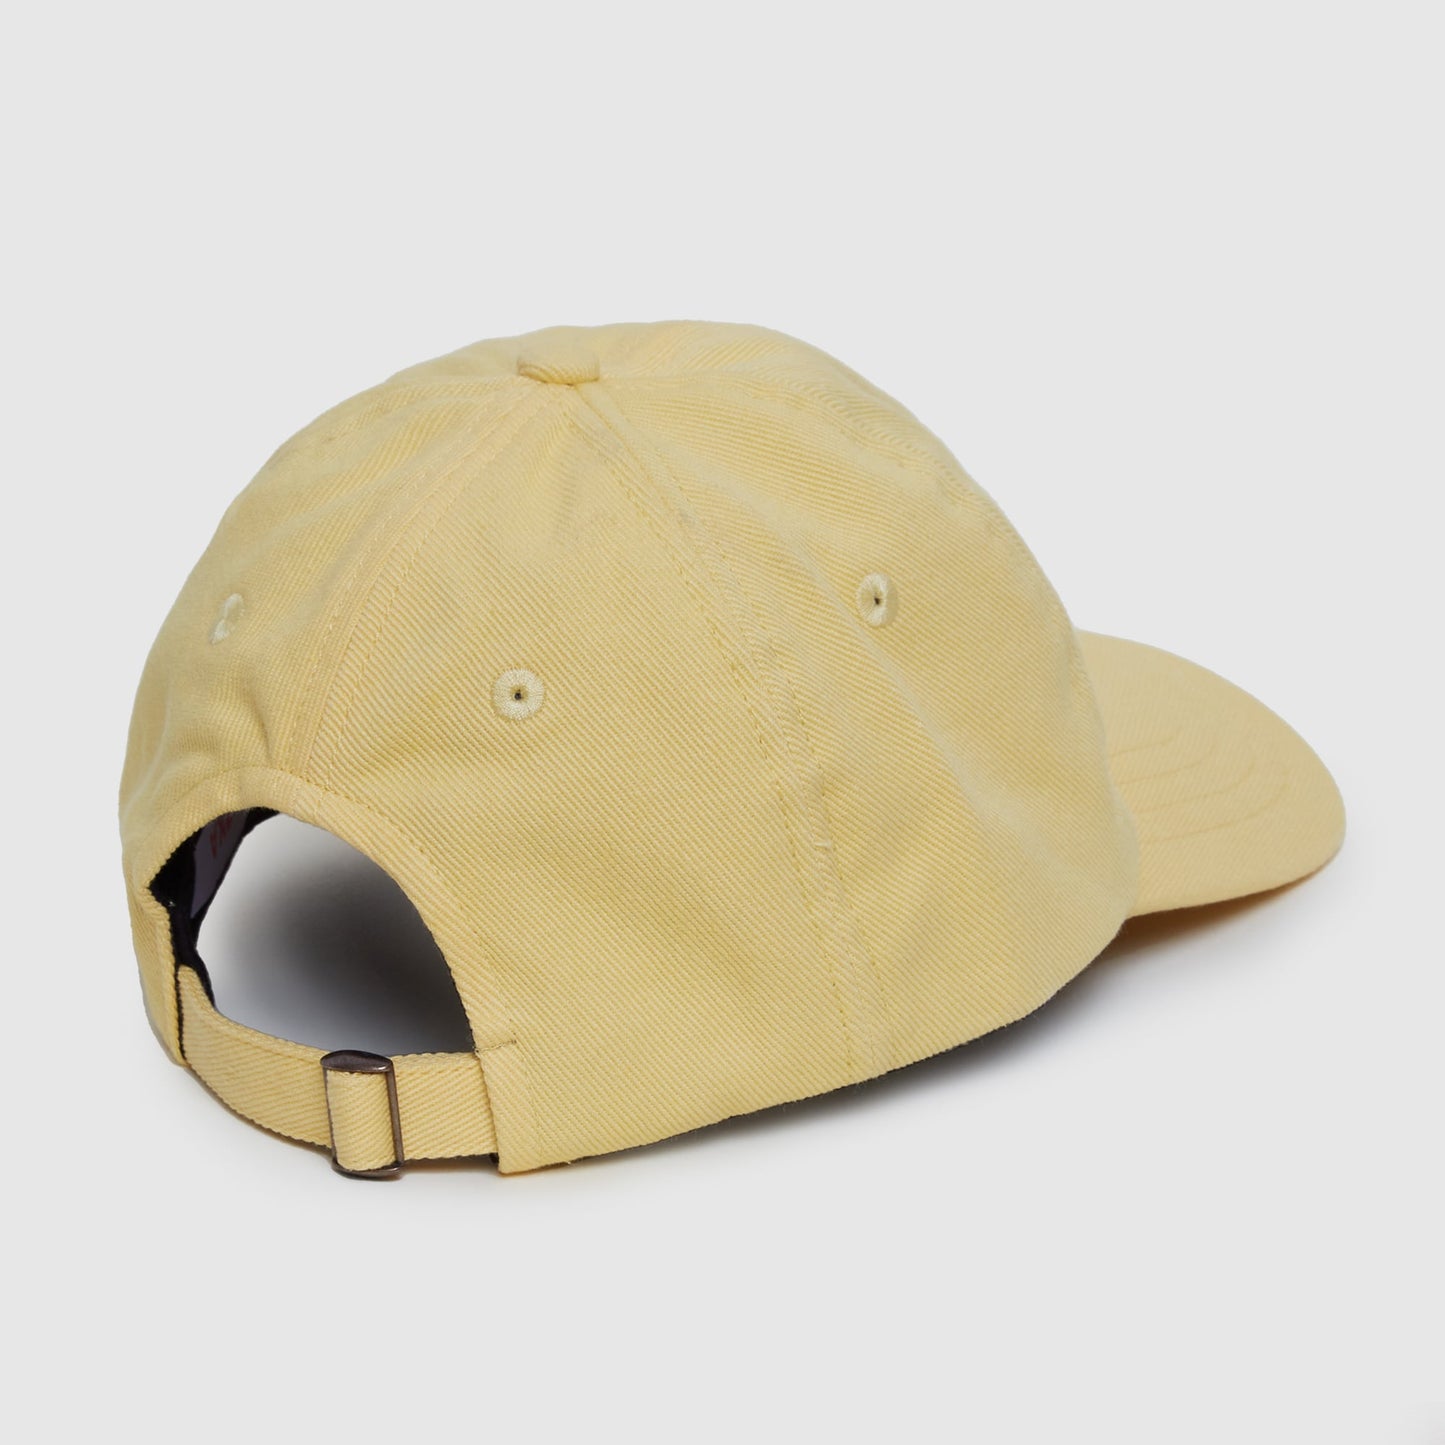 The yellow cap